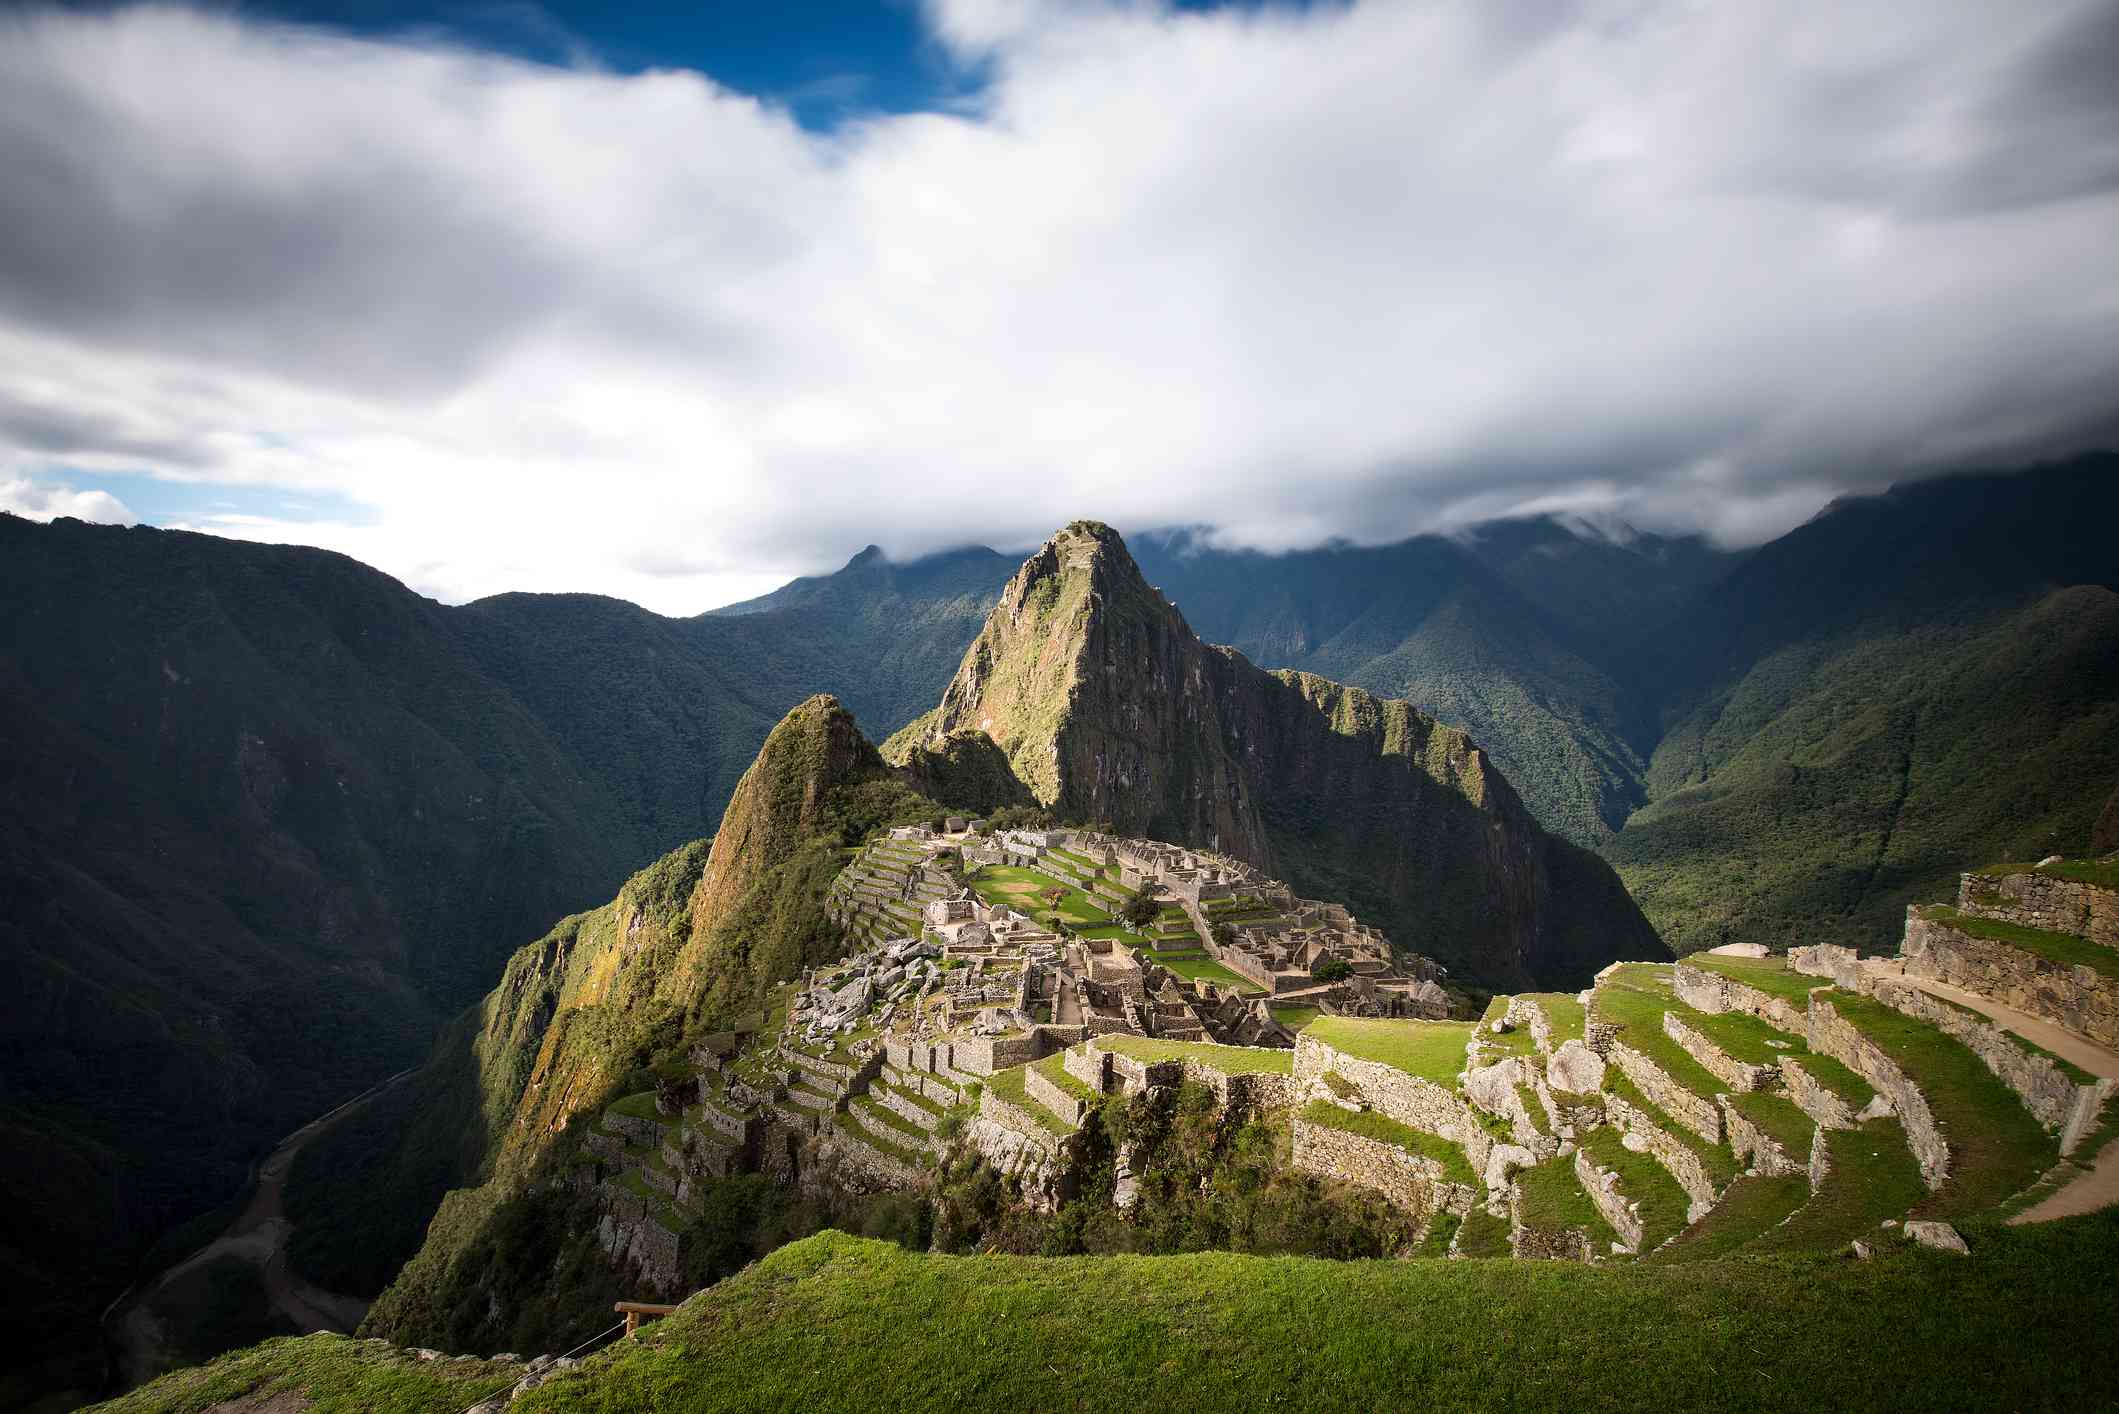 Vista de las montañas y ruinas de Machu Picchu cubiertas de exuberantes plantas verdes bajo densas nubes con un poco de cielo azul